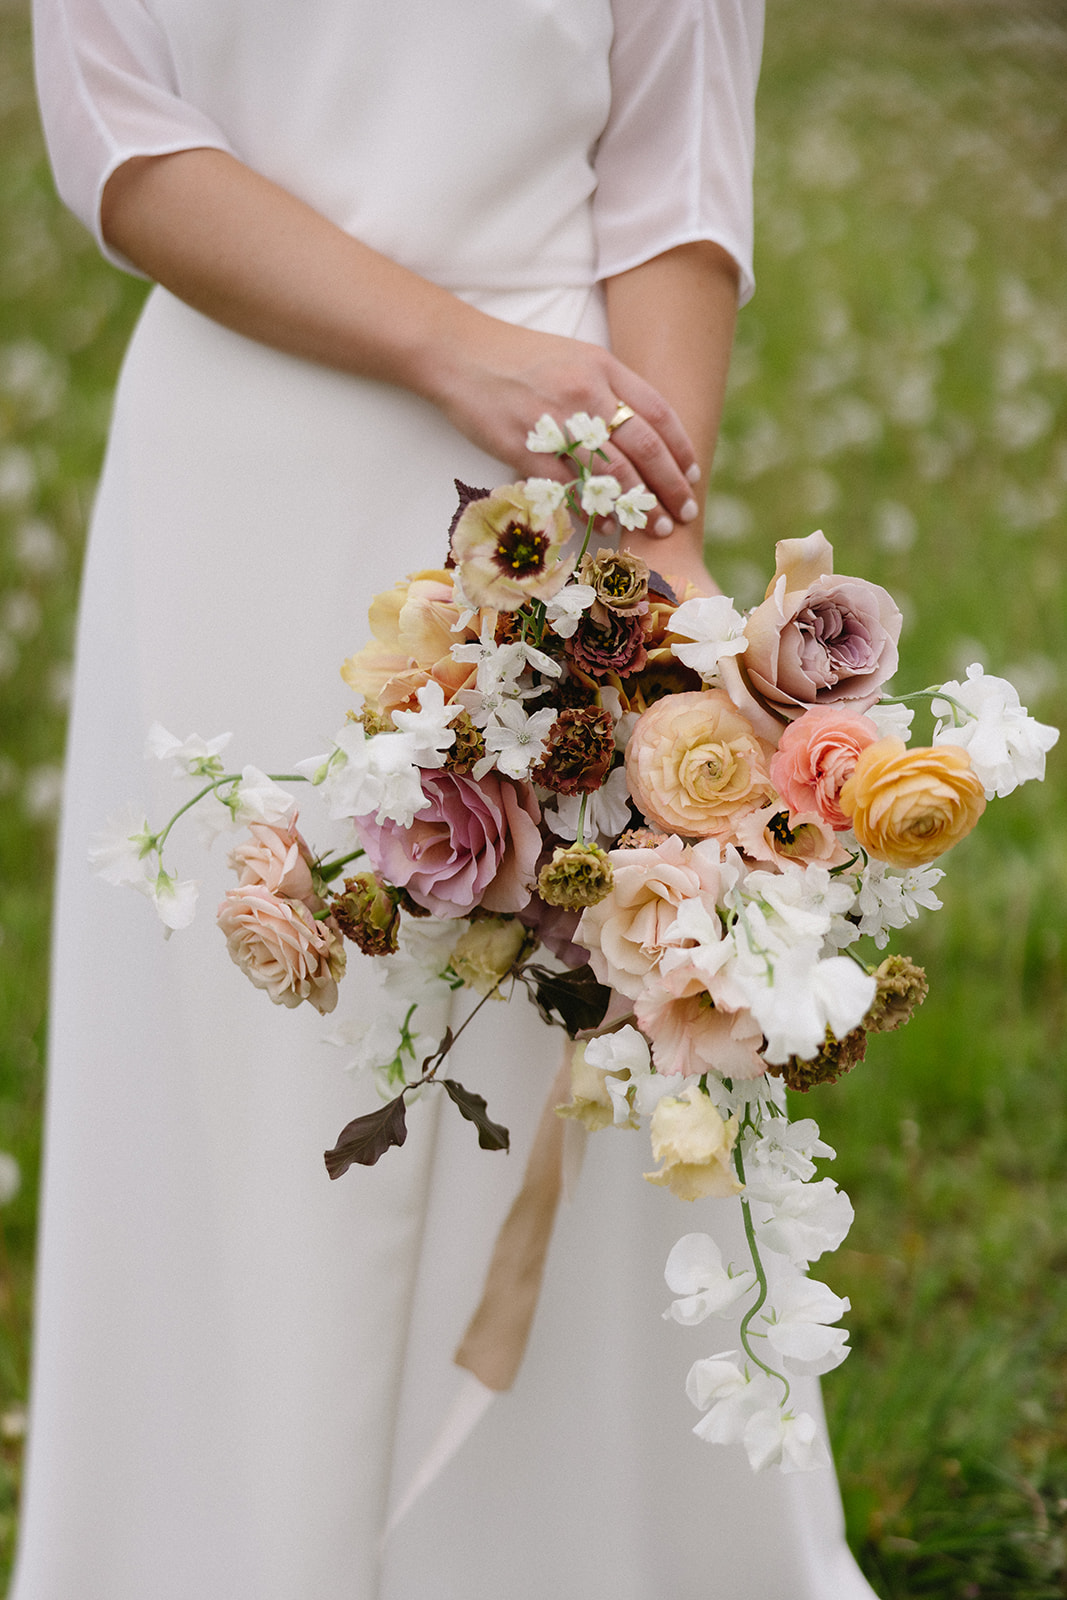 Bride's exquisite bridal bouquet with minimalist floral arrangement